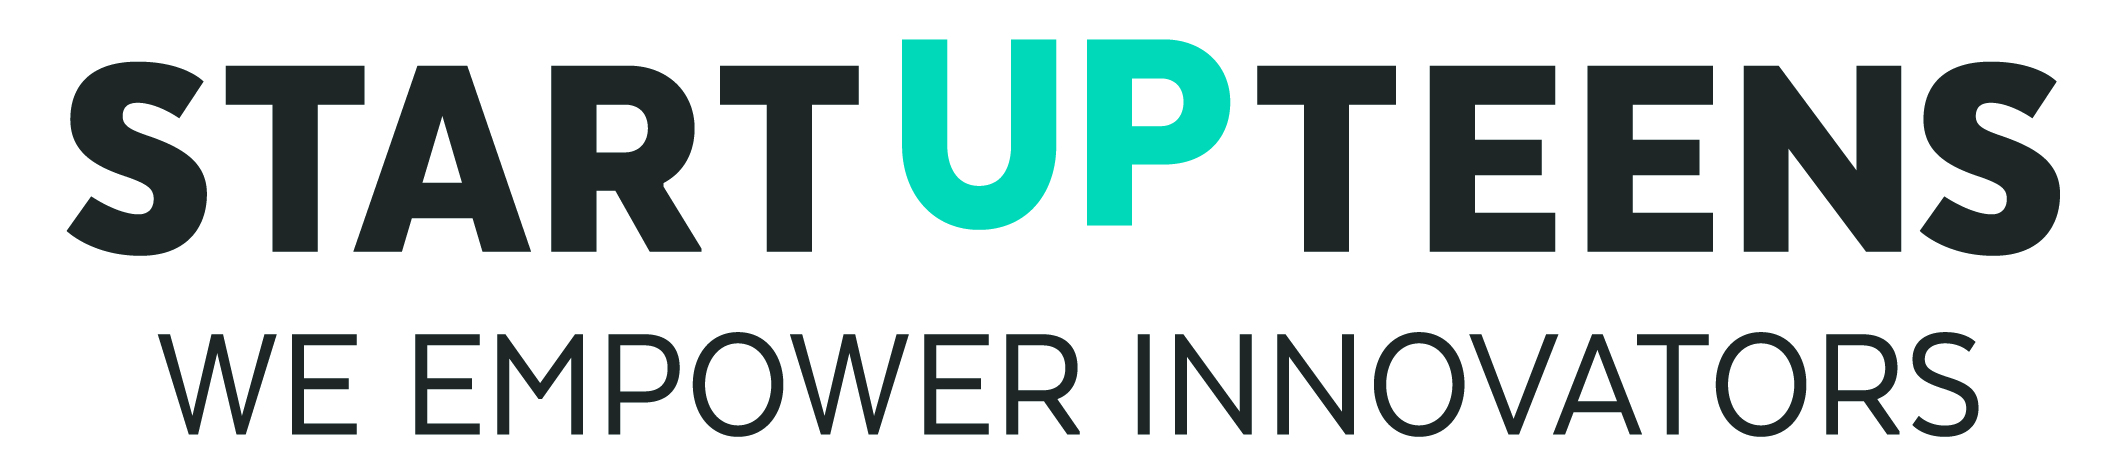 Startup Teens Logo